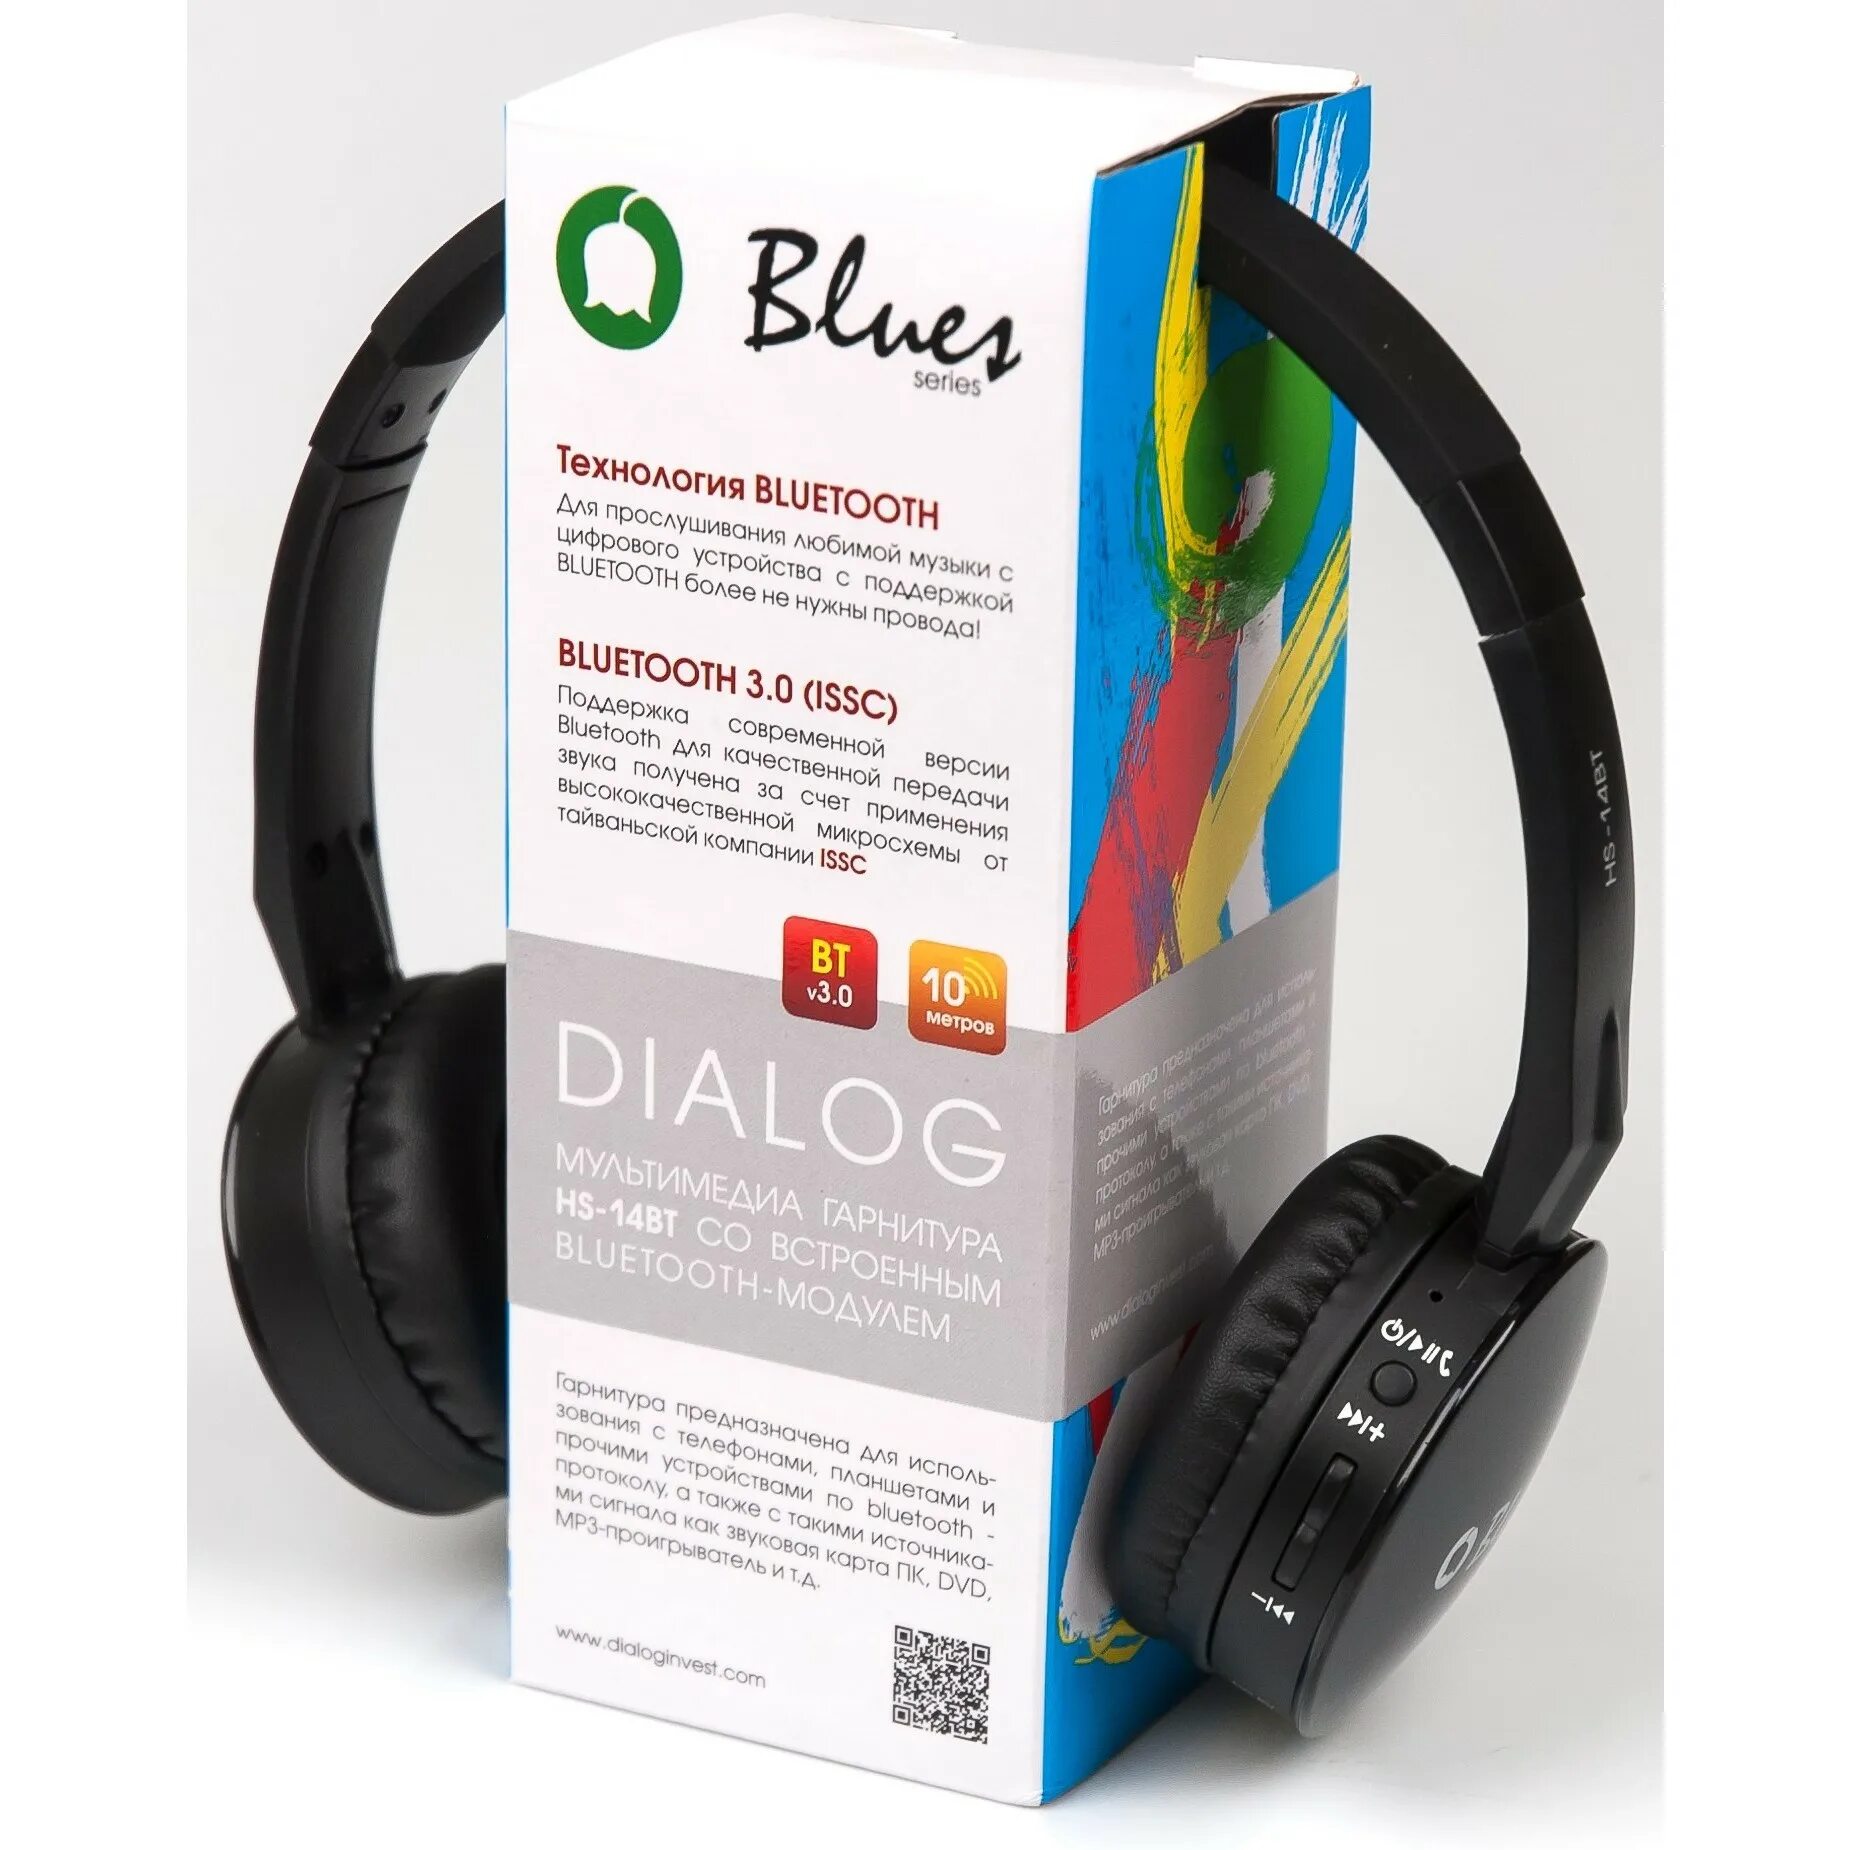 Гарнитура "dialog" HS-10bt Blues Bluetooth. Наушники накладные dialog. Наушники dialog HS-11bt беспроводные, с микрофоном, Bluetooth, черный. Dialog наушники USB.